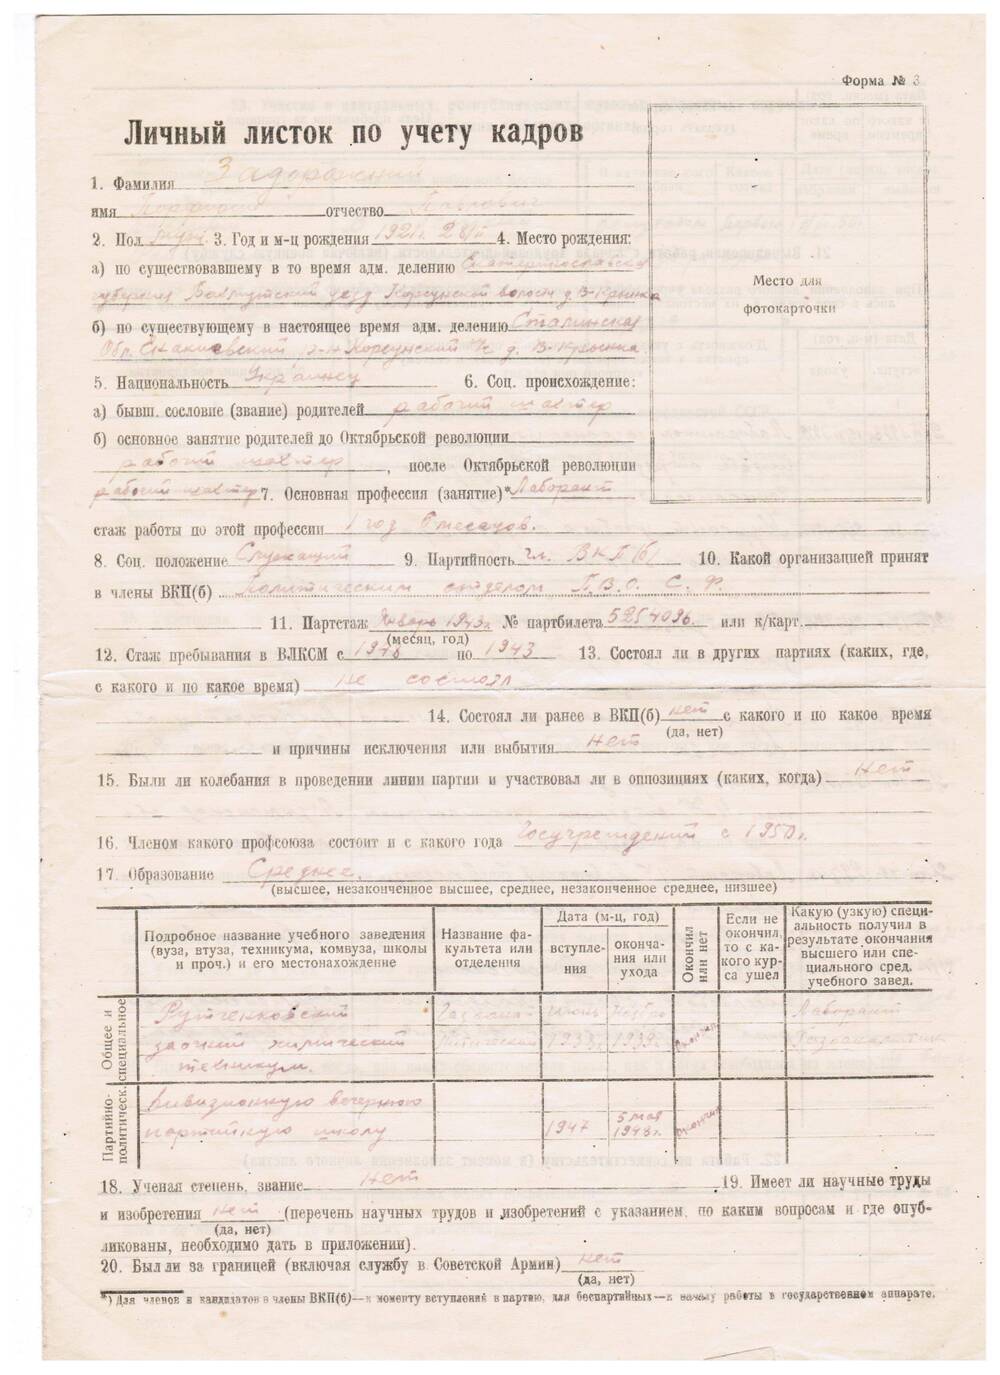 Личный листок по учету кадров Задорожного Порфирия Павловича, заполненный собственноручно. 1951 год